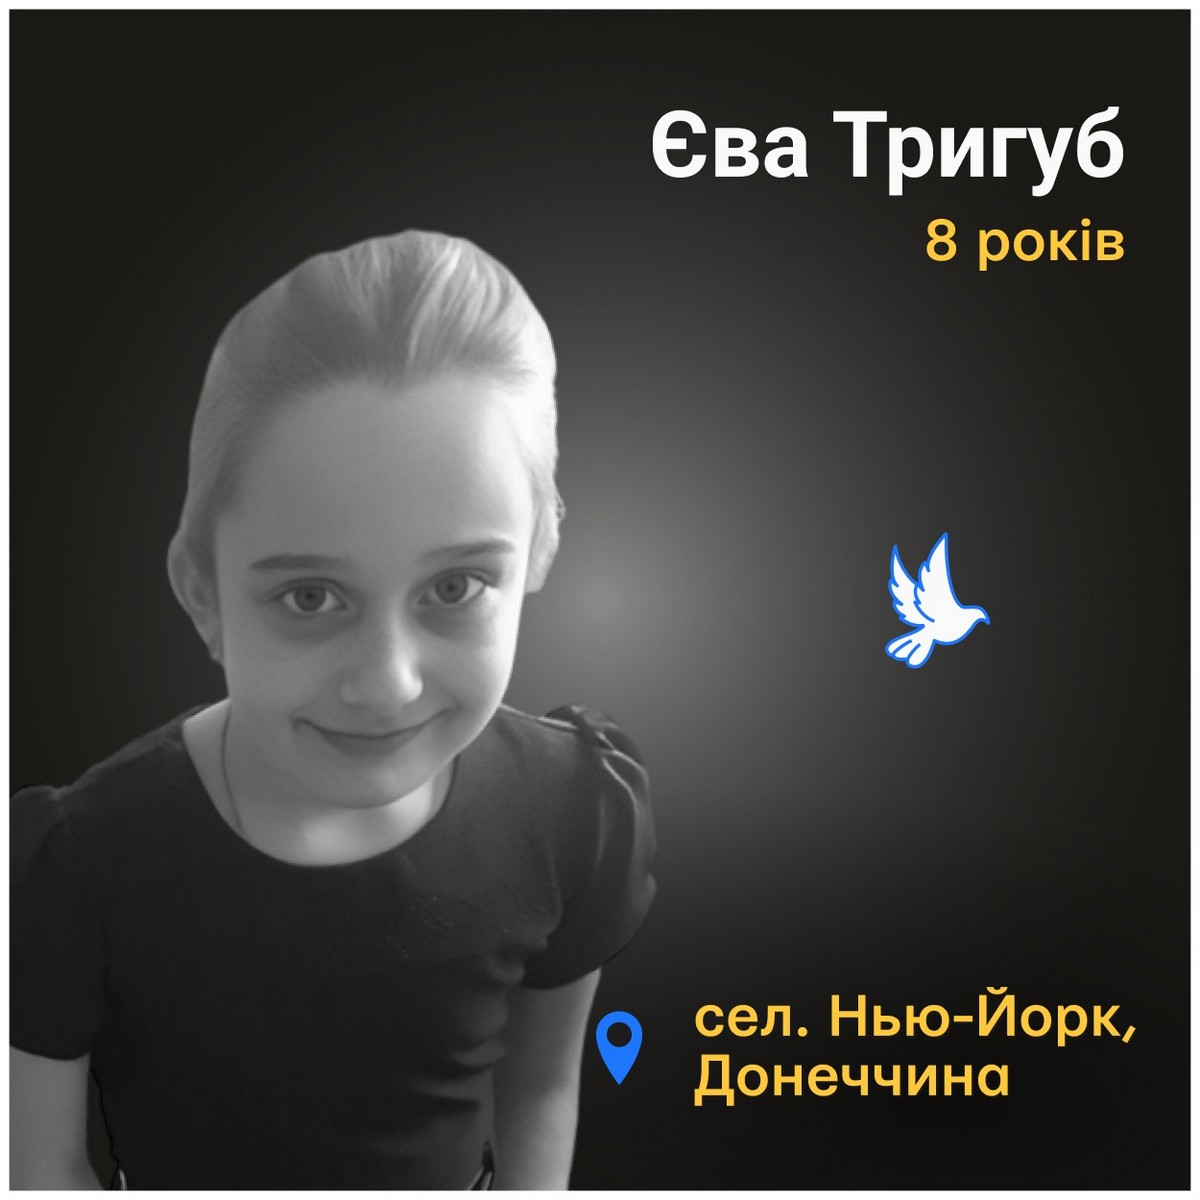 Меморіал: вбиті росією. Єва Тригуб, 8 років, Нью-Йорк, червень